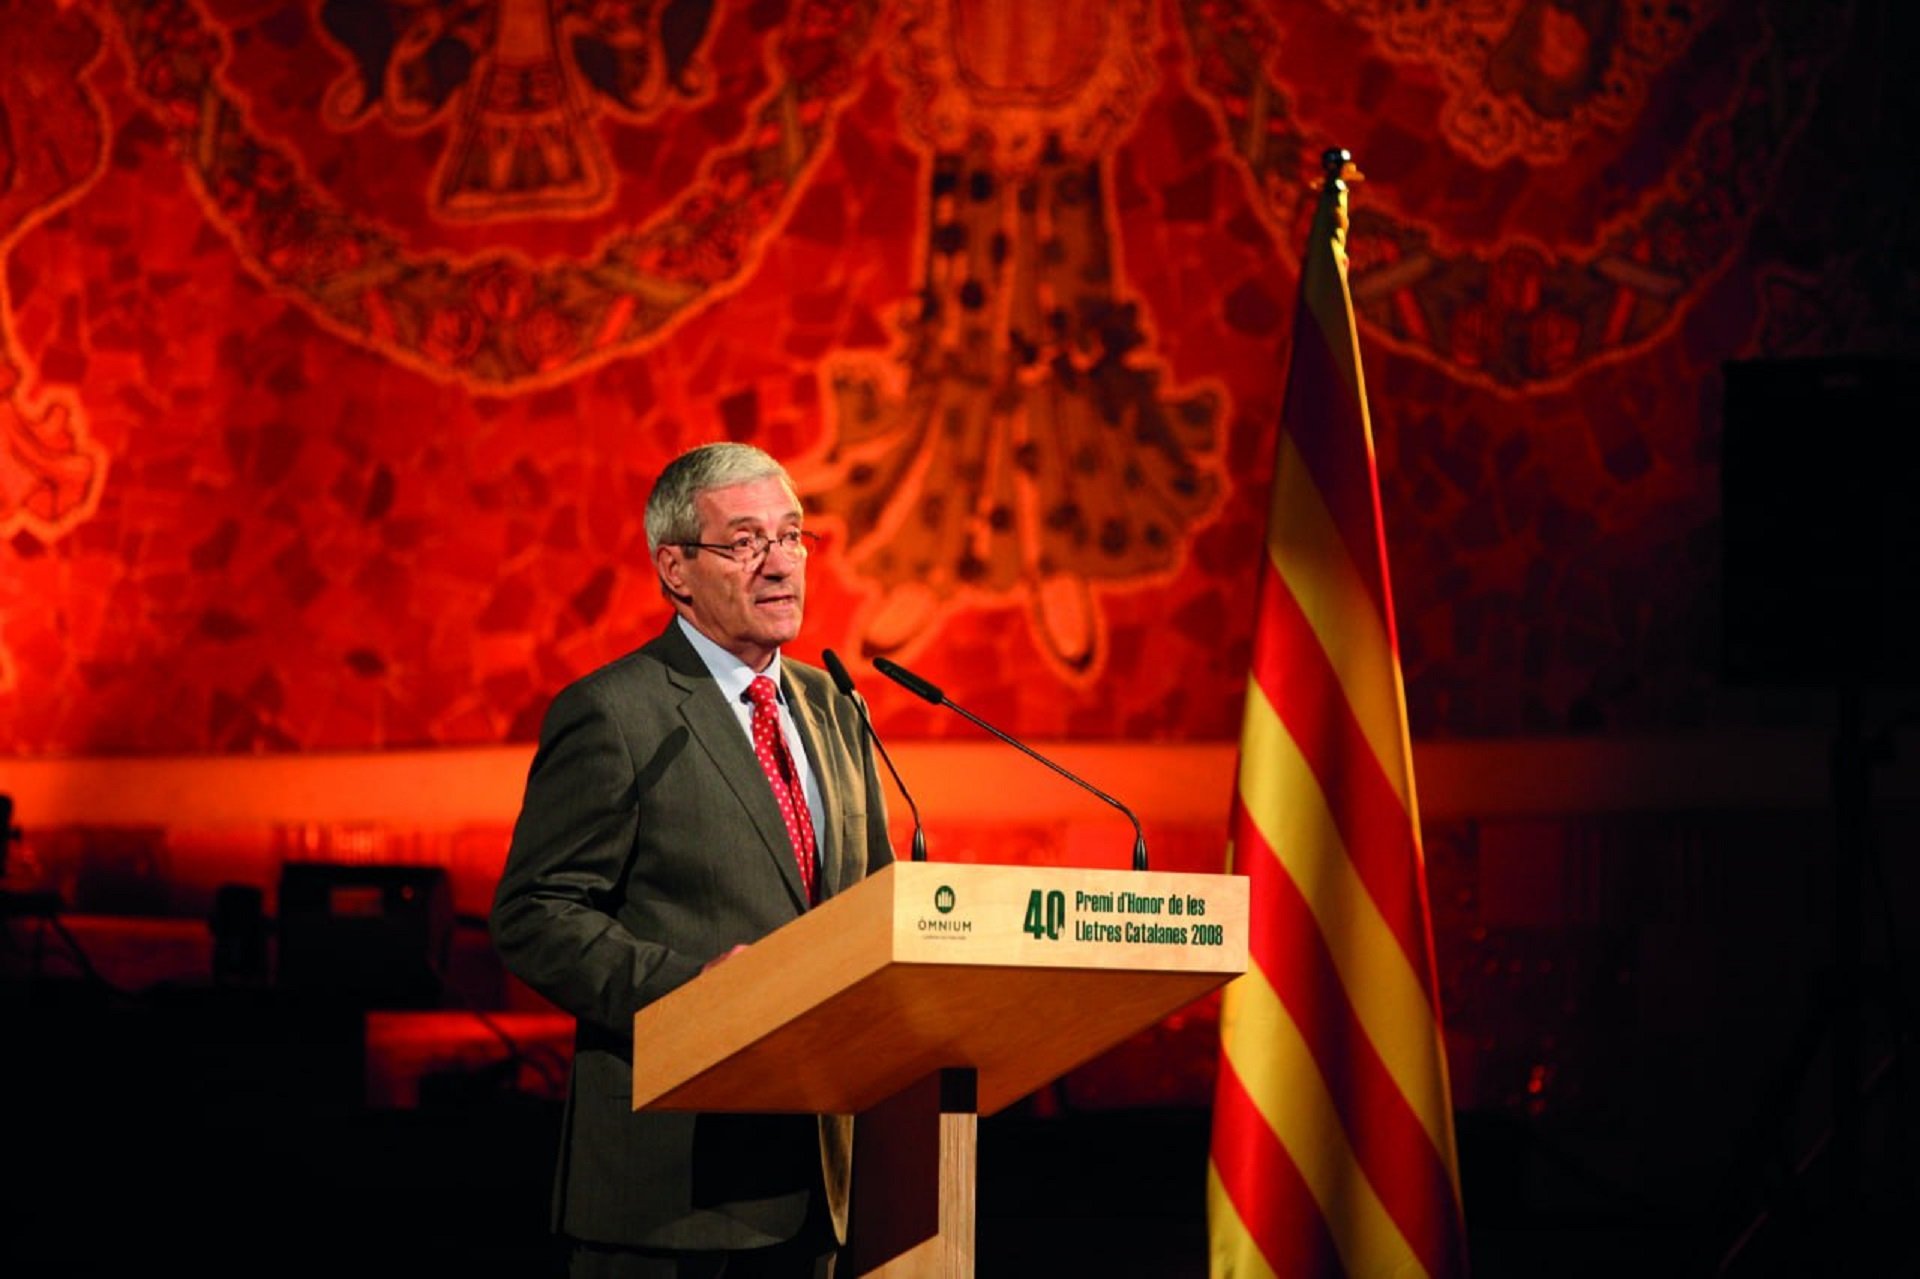 Mor Jordi Porta, expresident d'Òmnium Cultural i activista catalanista, als 86 anys